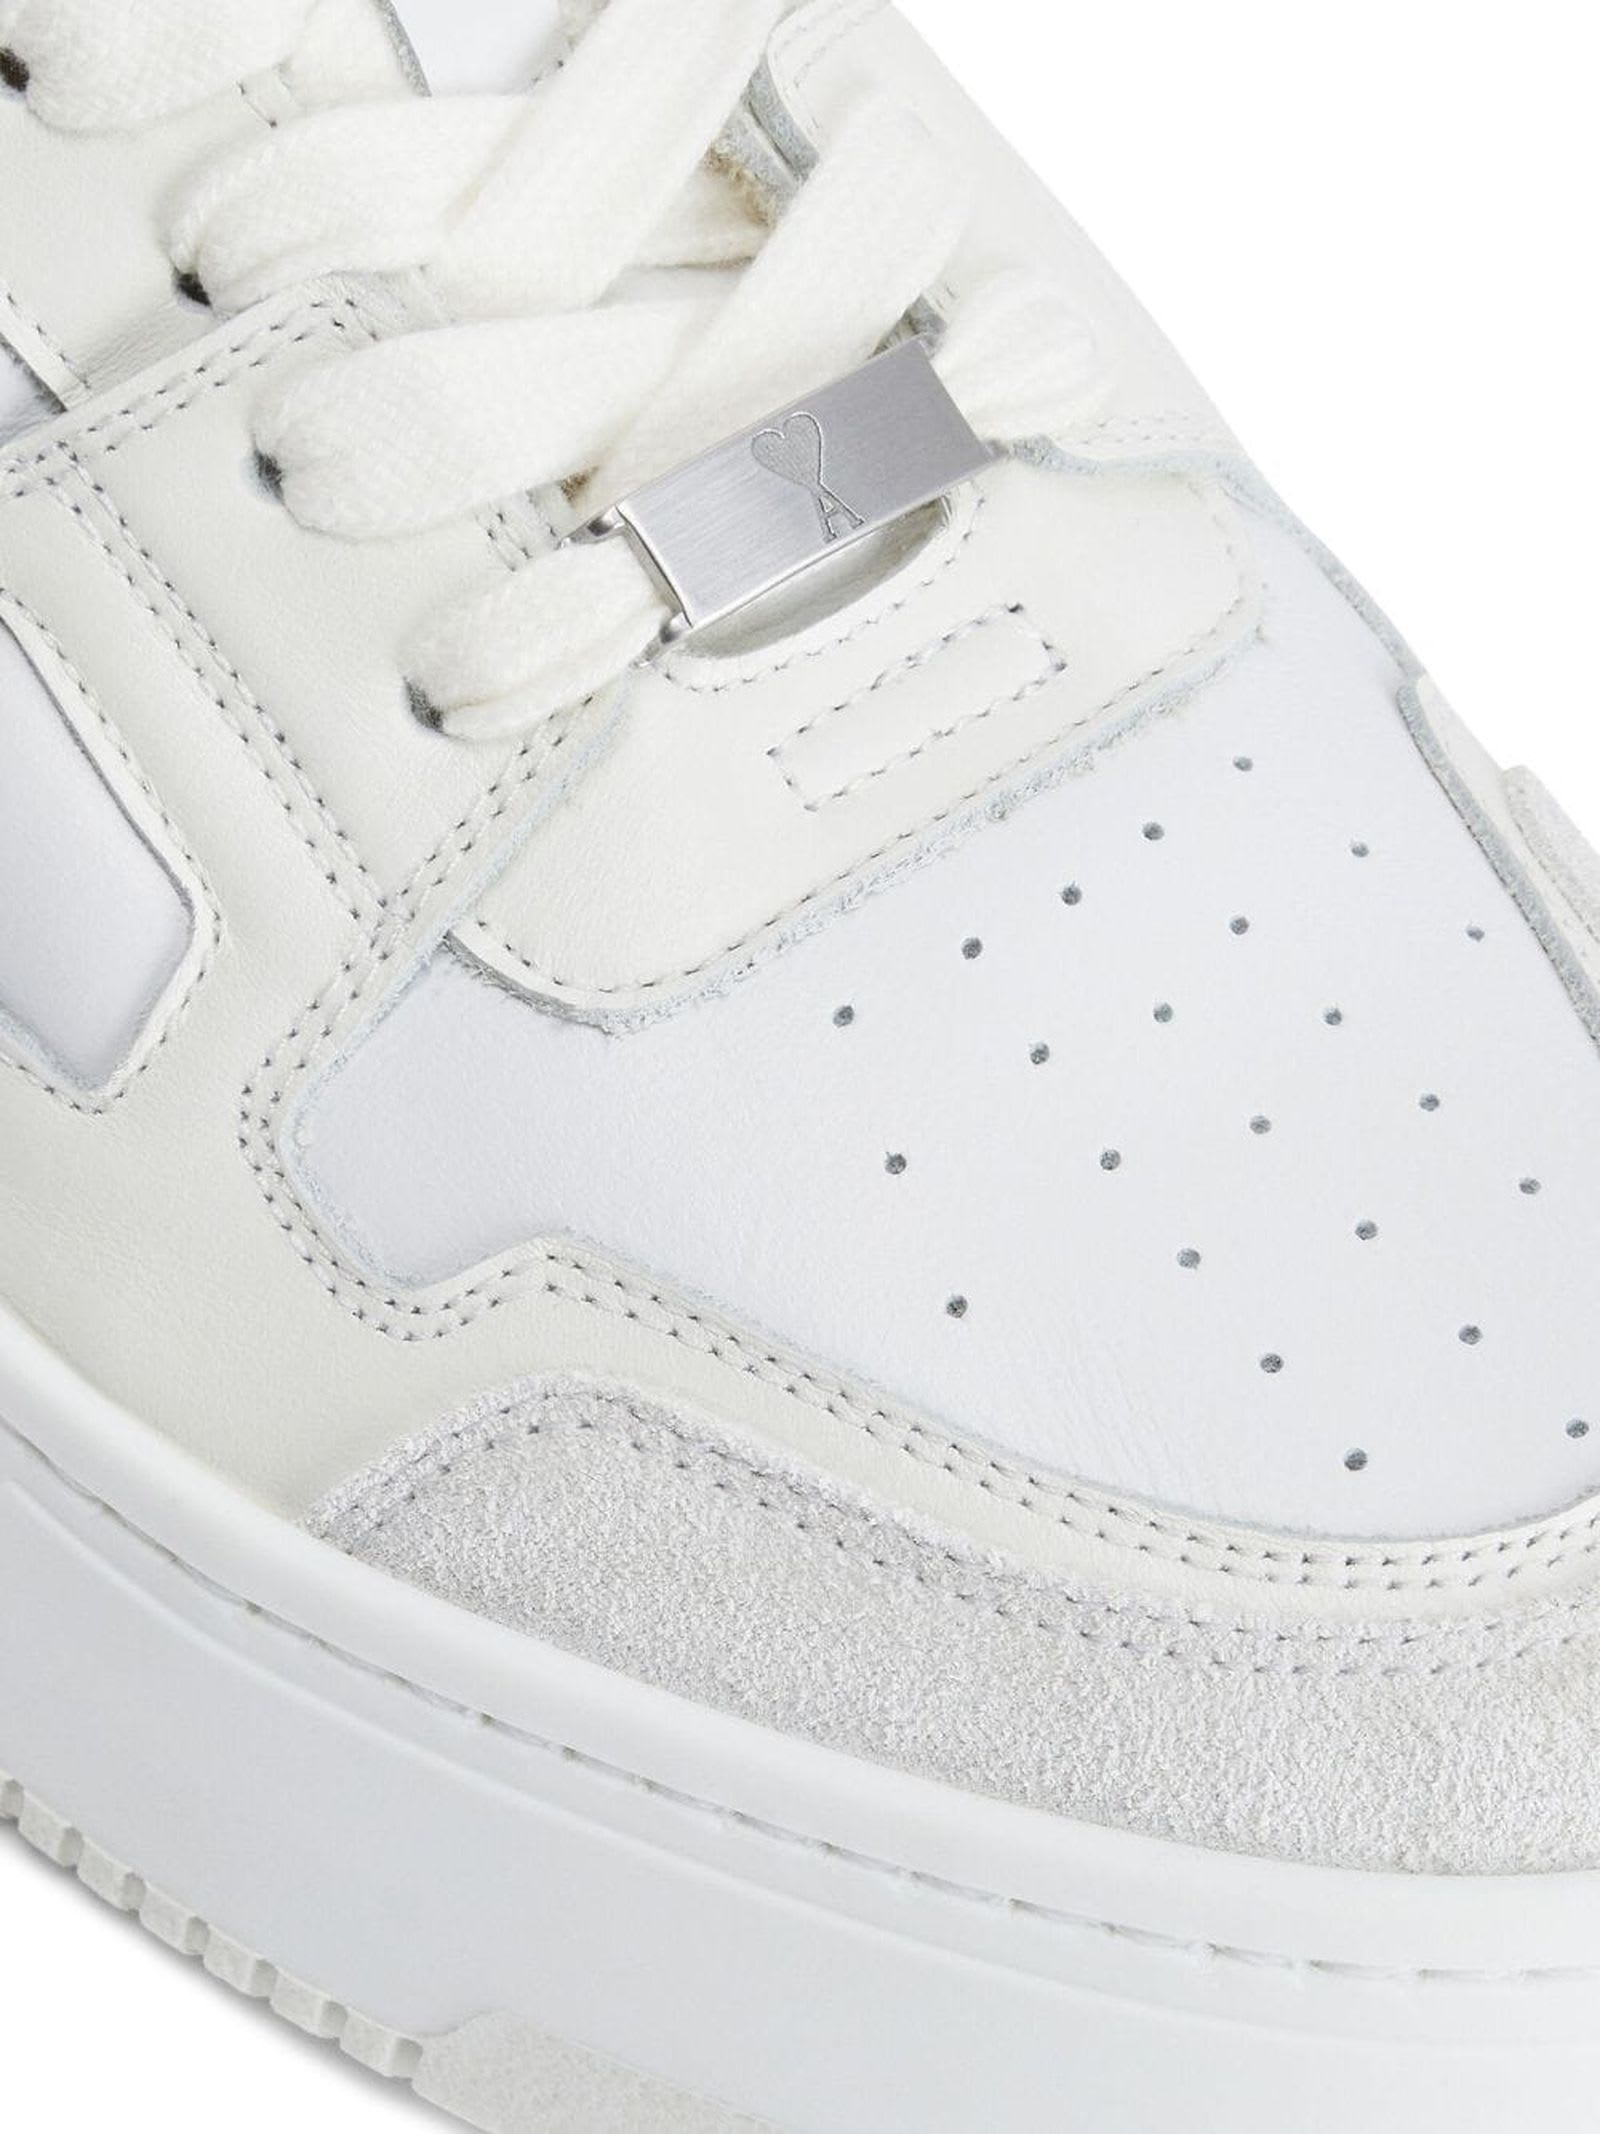 Shop Ami Alexandre Mattiussi White Calf Leather Sneakers